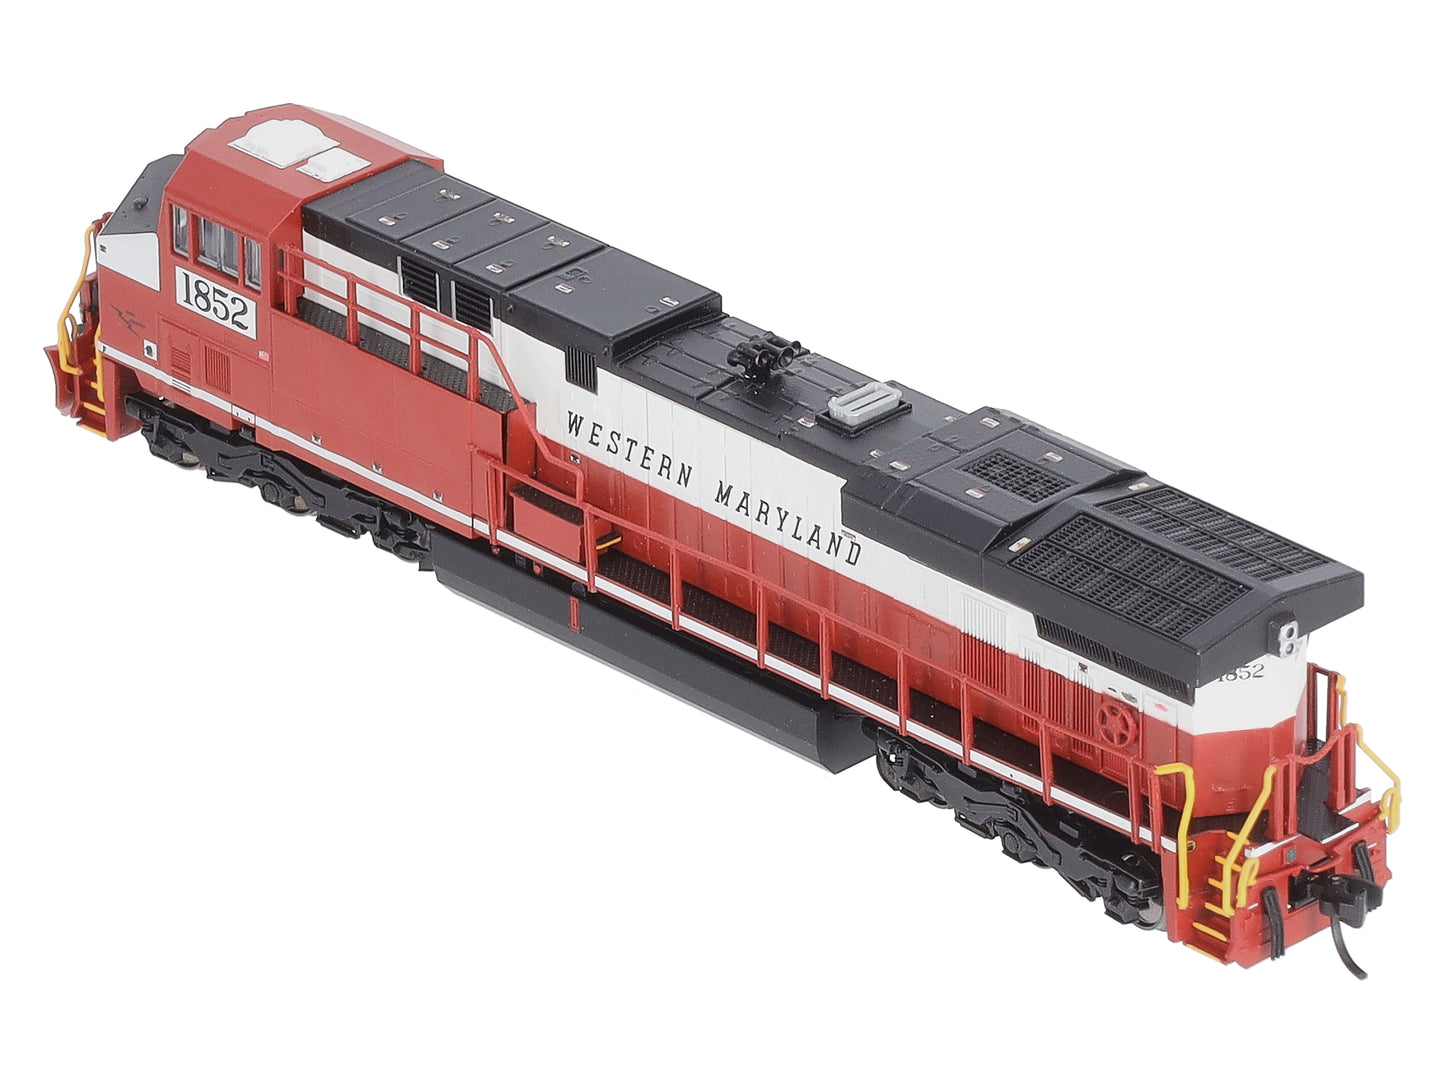 Fox Valley Models 70007 N Scale Western Maryland GE-ES44-G1 Diesel #1852